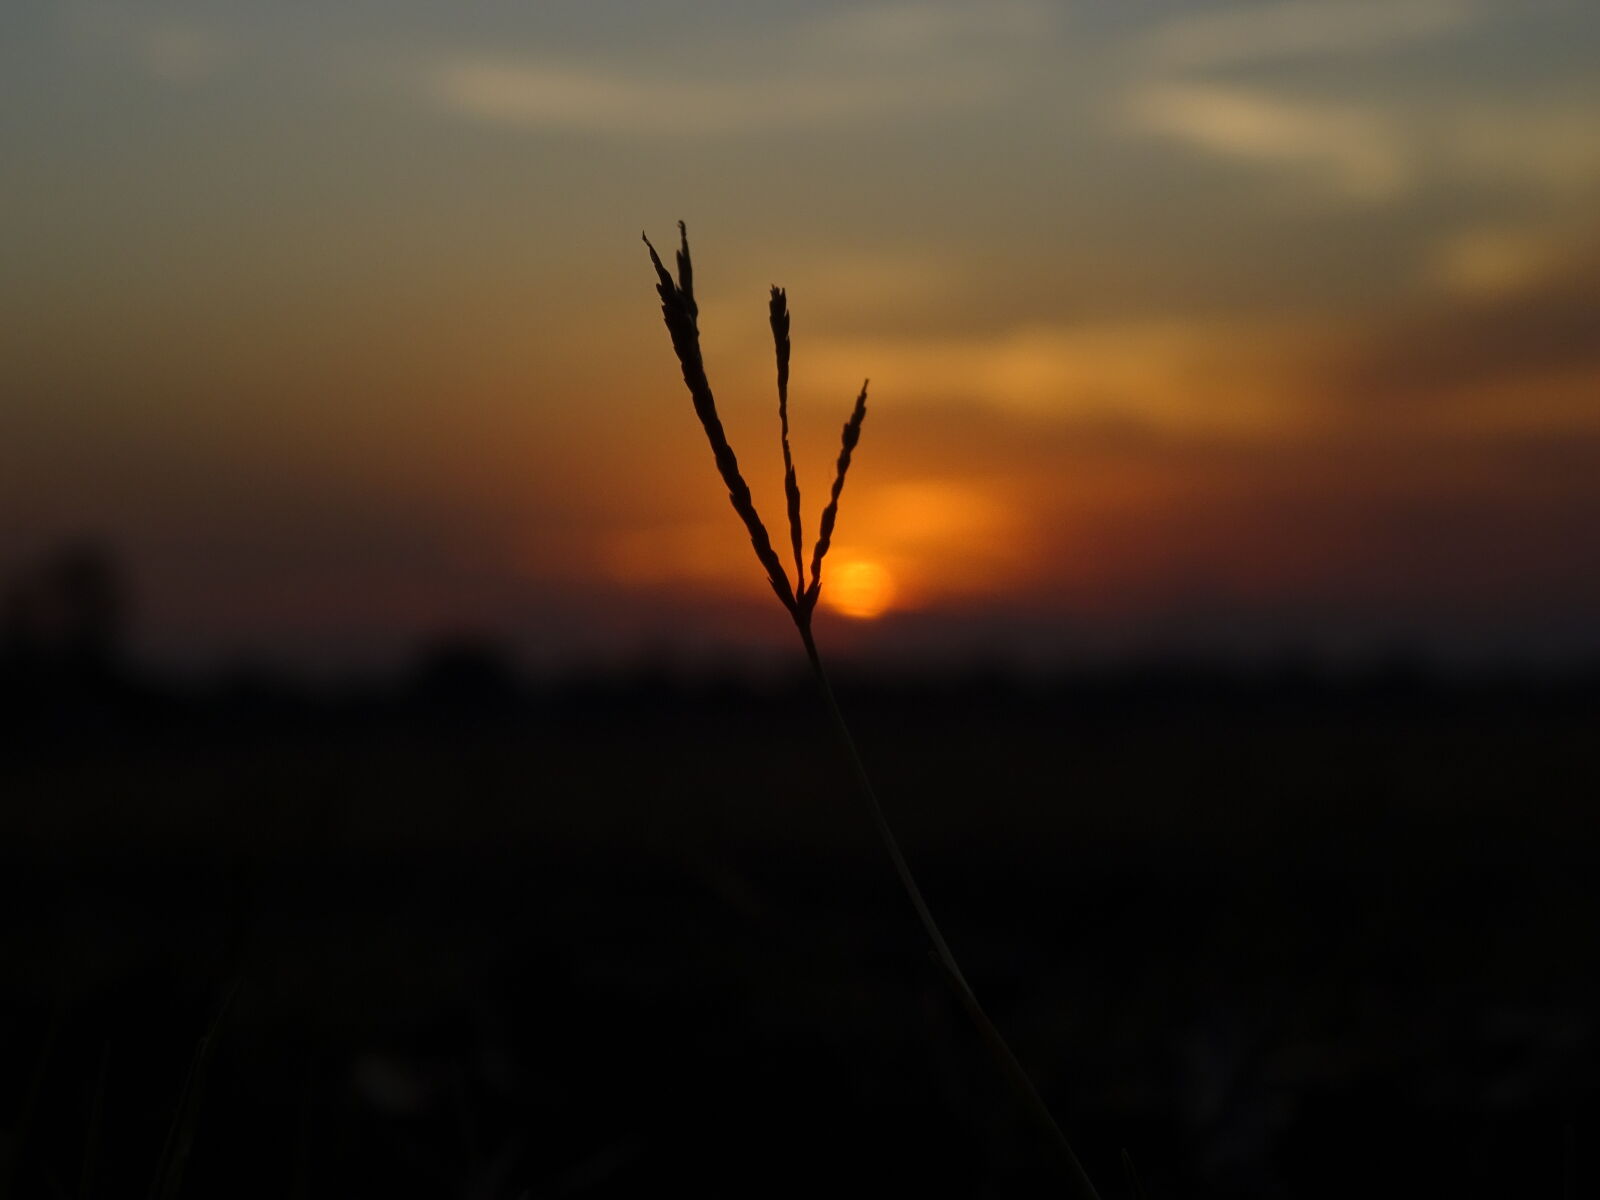 Sony DSC-HX60V sample photo. Field, grass, sunset photography